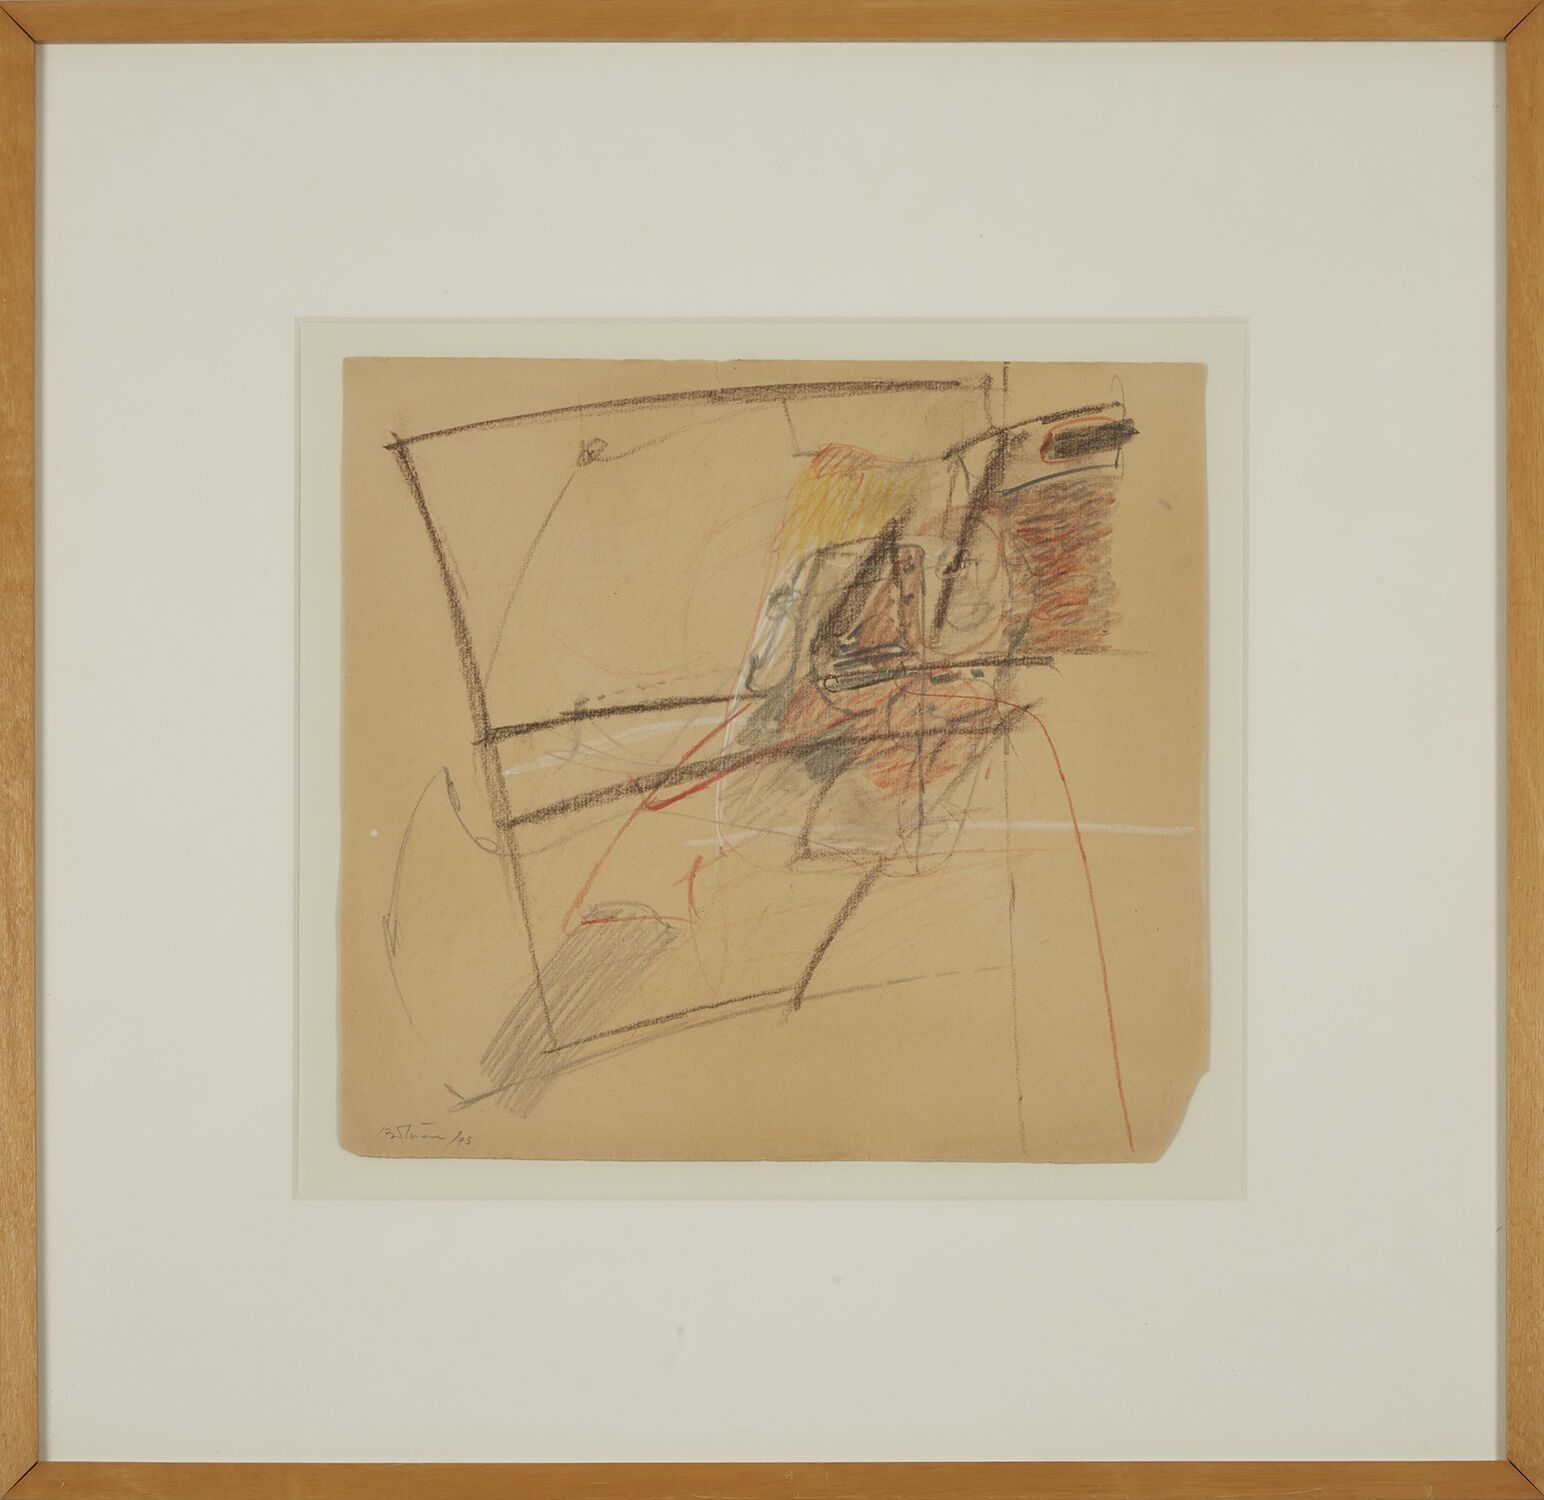 ALBERT BITRAN (1929-2018) 阿尔伯特-比特朗（1929-2018）
无题
炭笔和粉彩画，左下角有签名和 75 年的日期
炭笔和粉彩画，左&hellip;